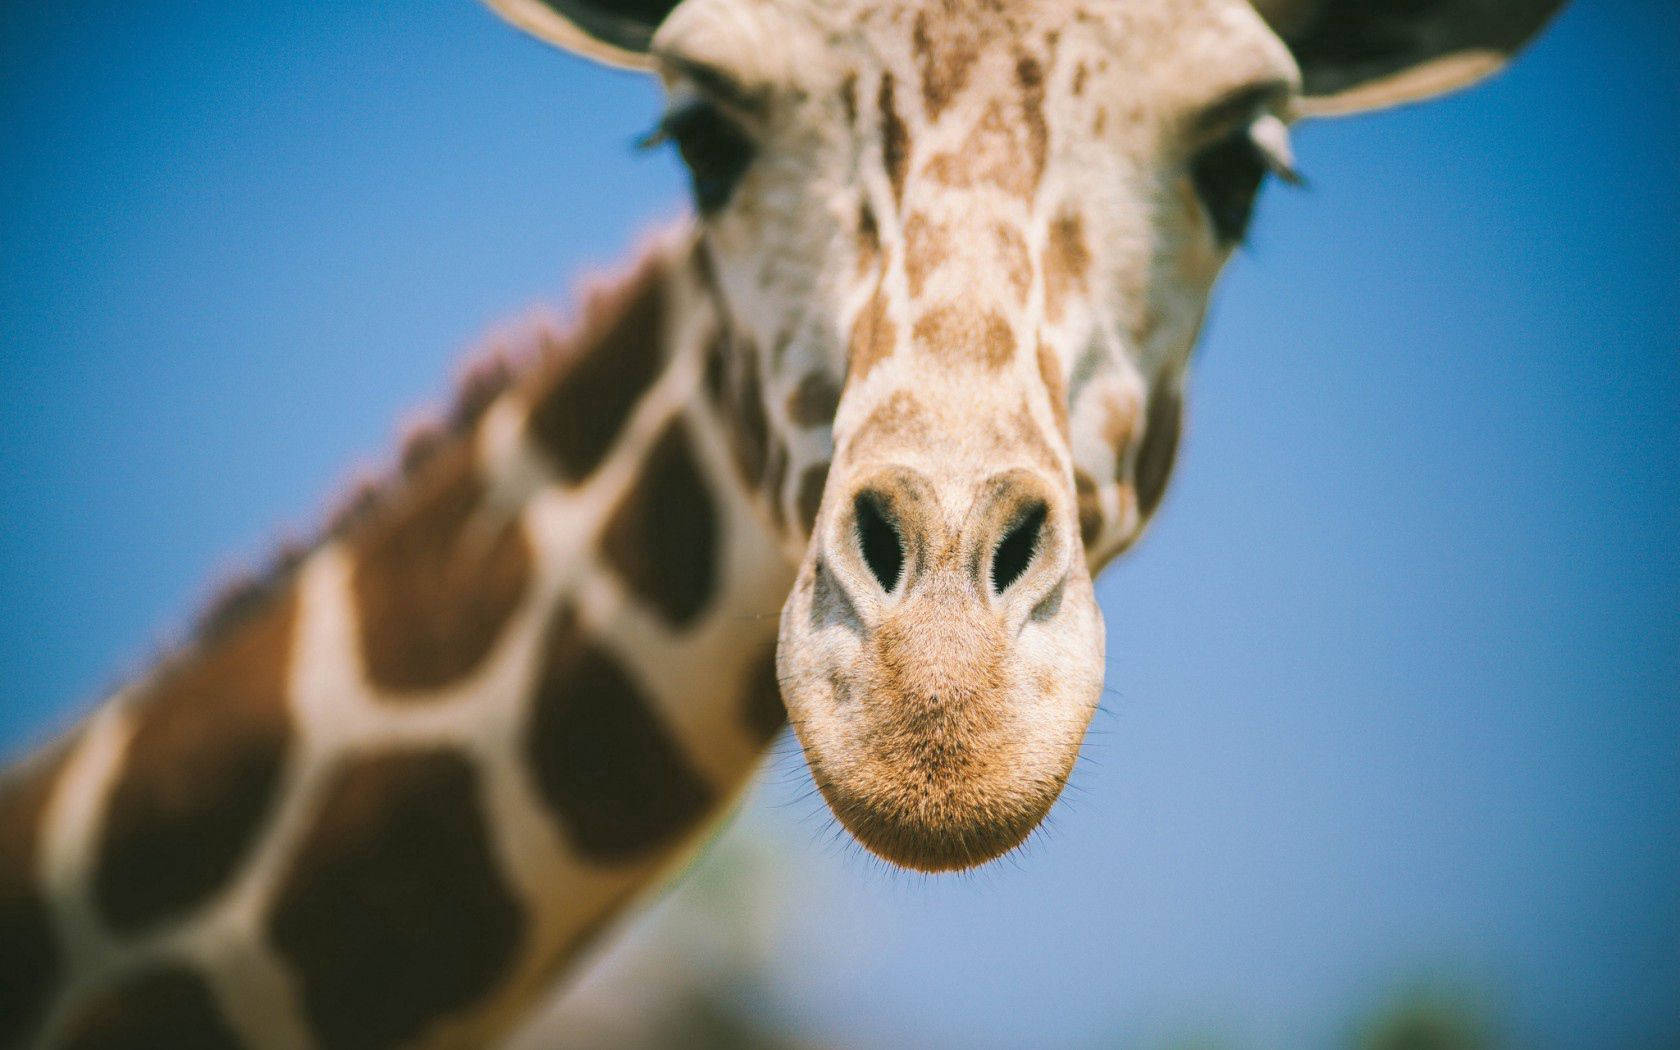 Blurry Giraffe's Face Wallpaper